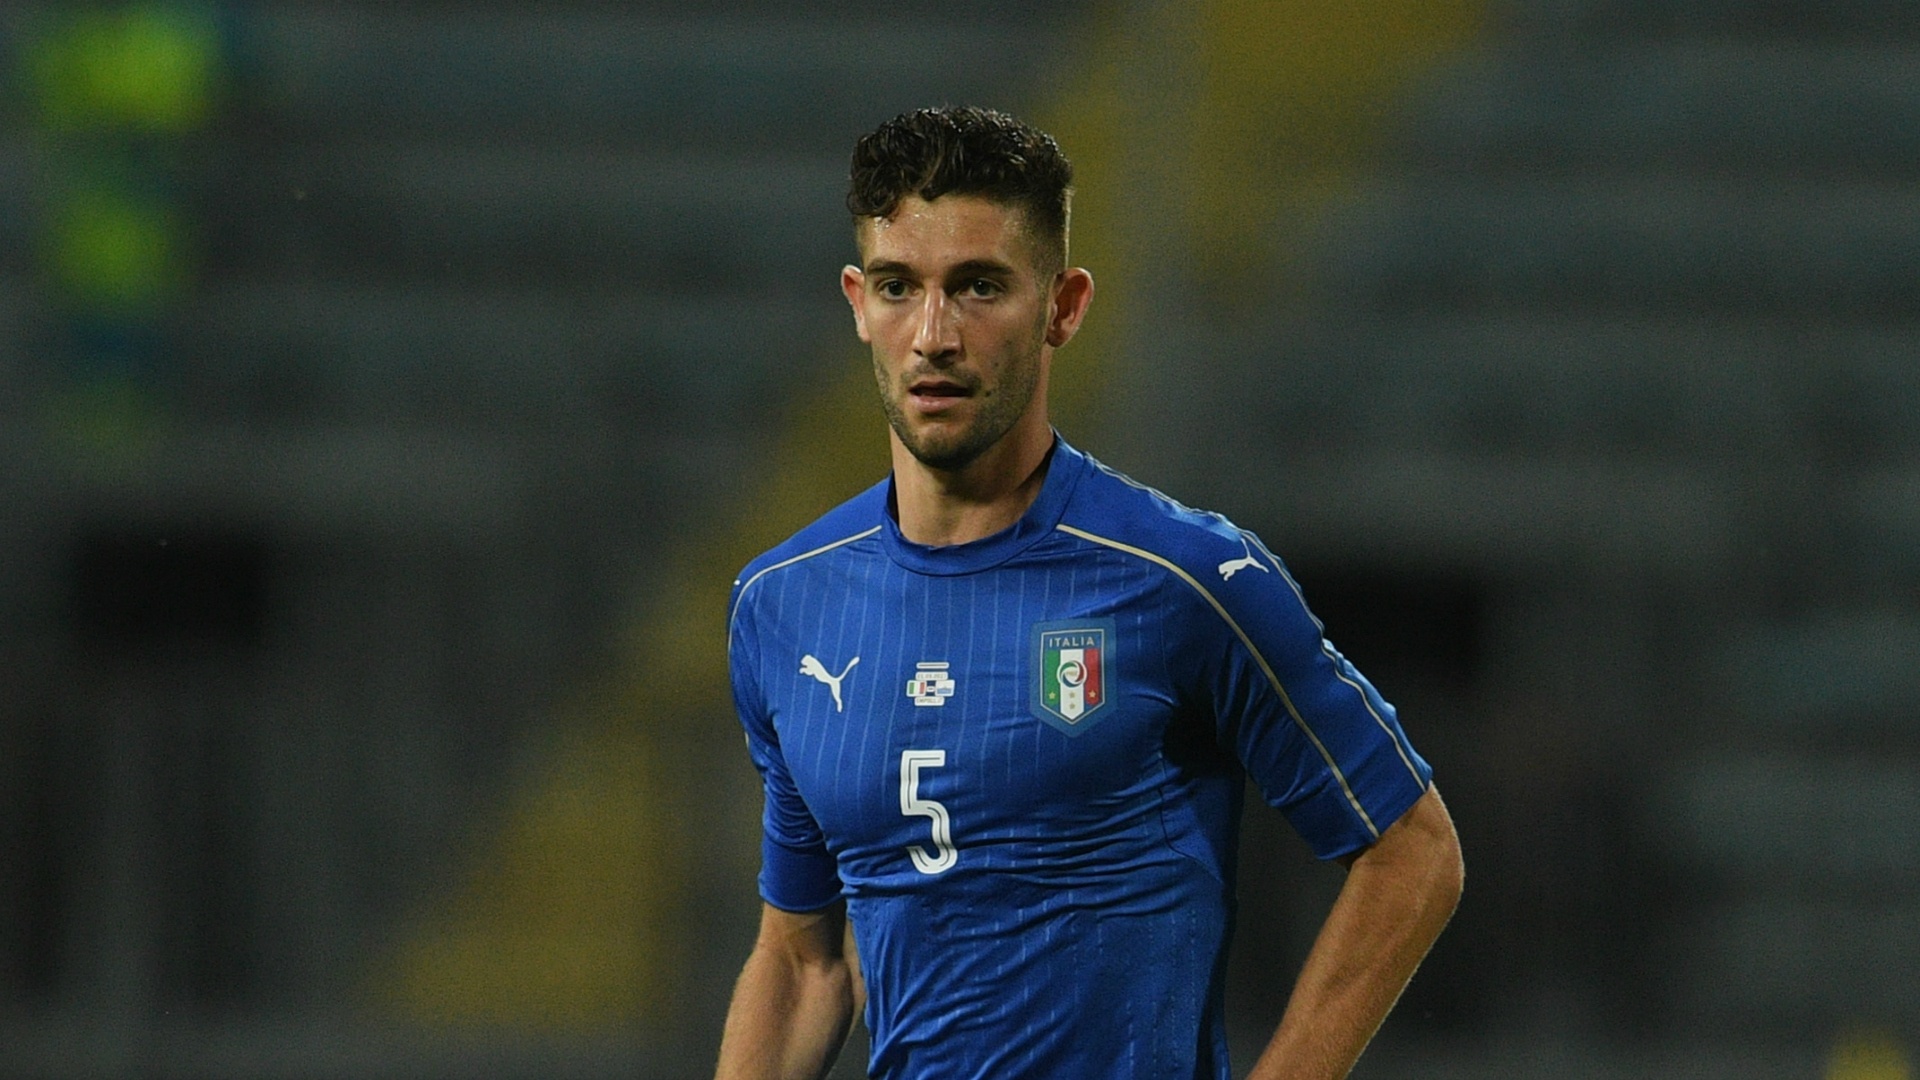 Gagliardini replaces Marchisio